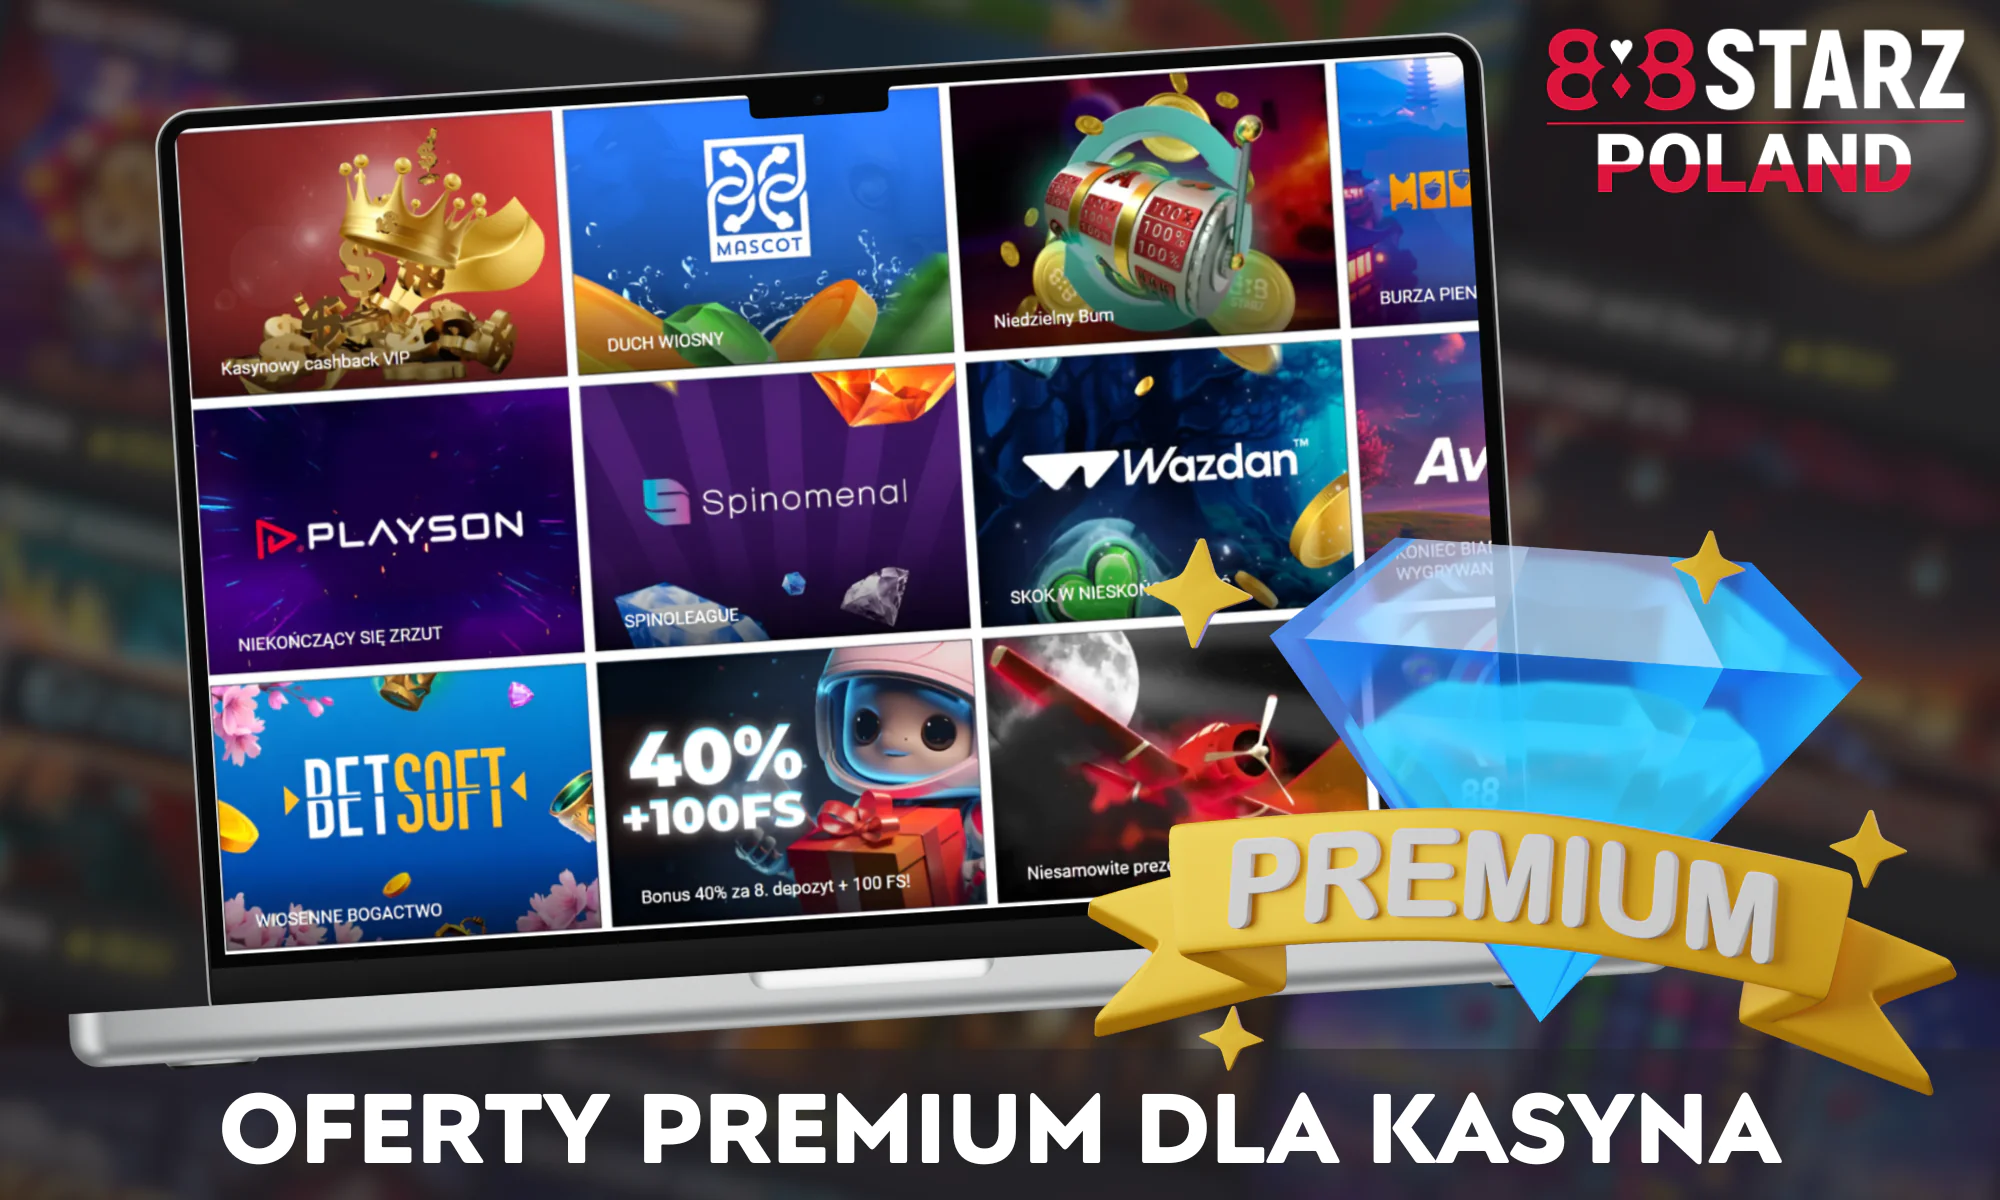 Gracze kasyna online 888Starz w Polsce mogą skorzystać z szeregu bonusów i promocji